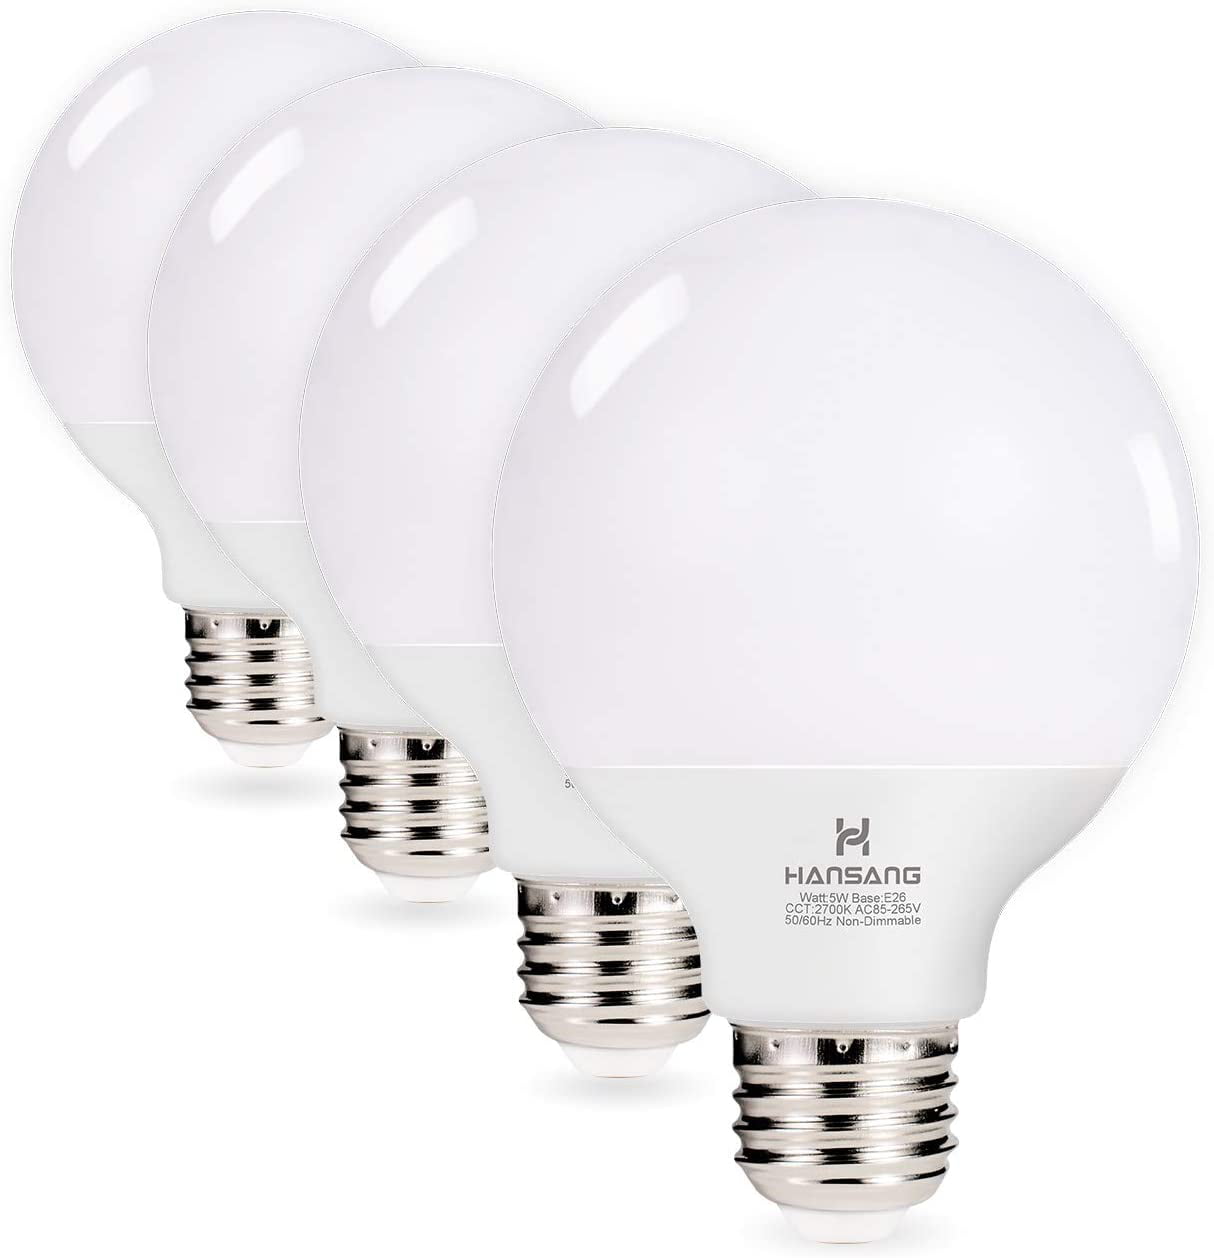 G25 Led Vanity Light Bulb Hansang 5w, Led Bathroom Light Bulbs